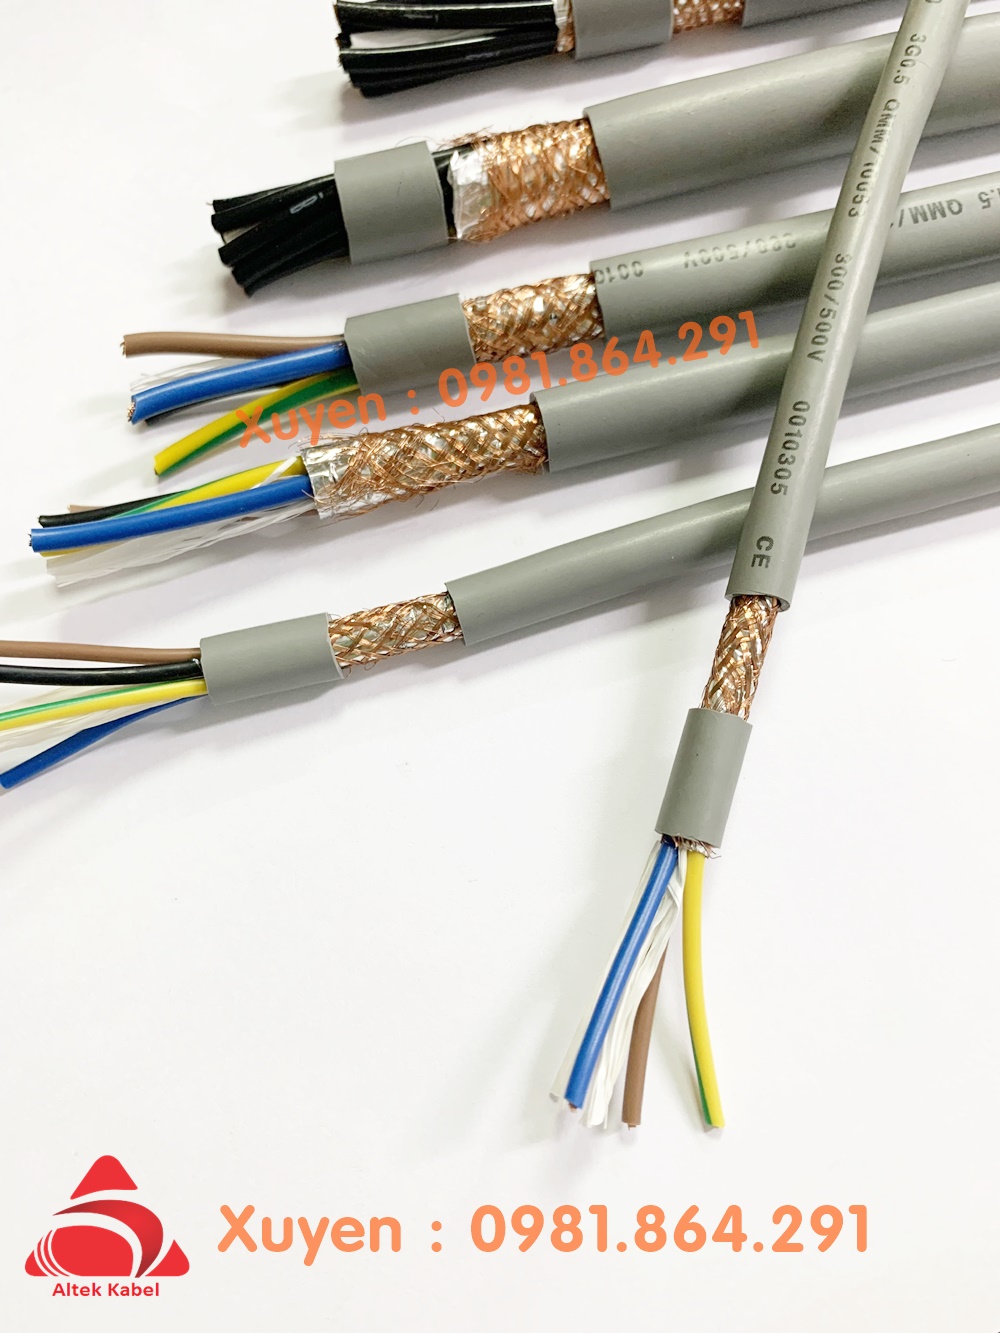 Cáo điện lõi đồng mềm 3x1.5mm2 chính hãng Altek kabel